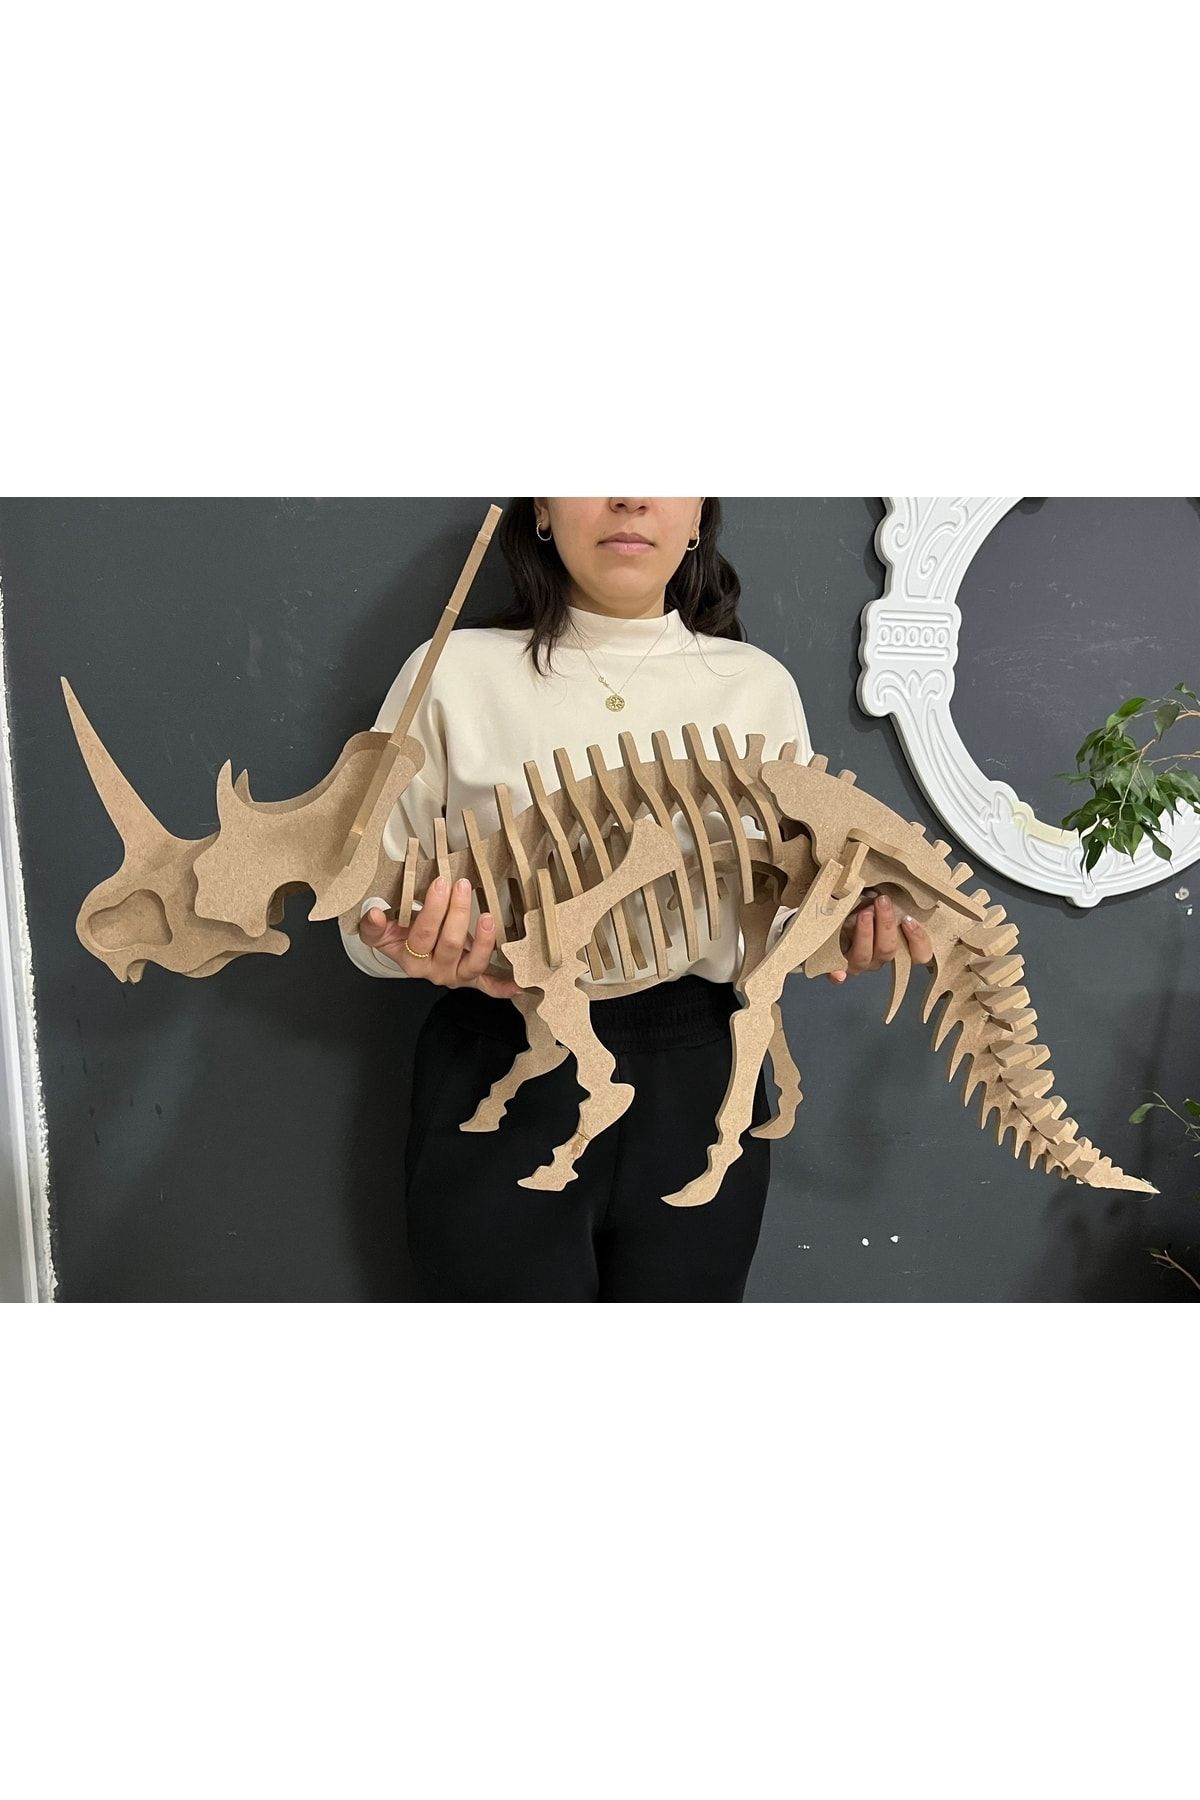 MONTEMO 3D Dinozor İskelet Maket-Yapboz-Dekoratif Obje-Ahşap-(8mm ham mdf)